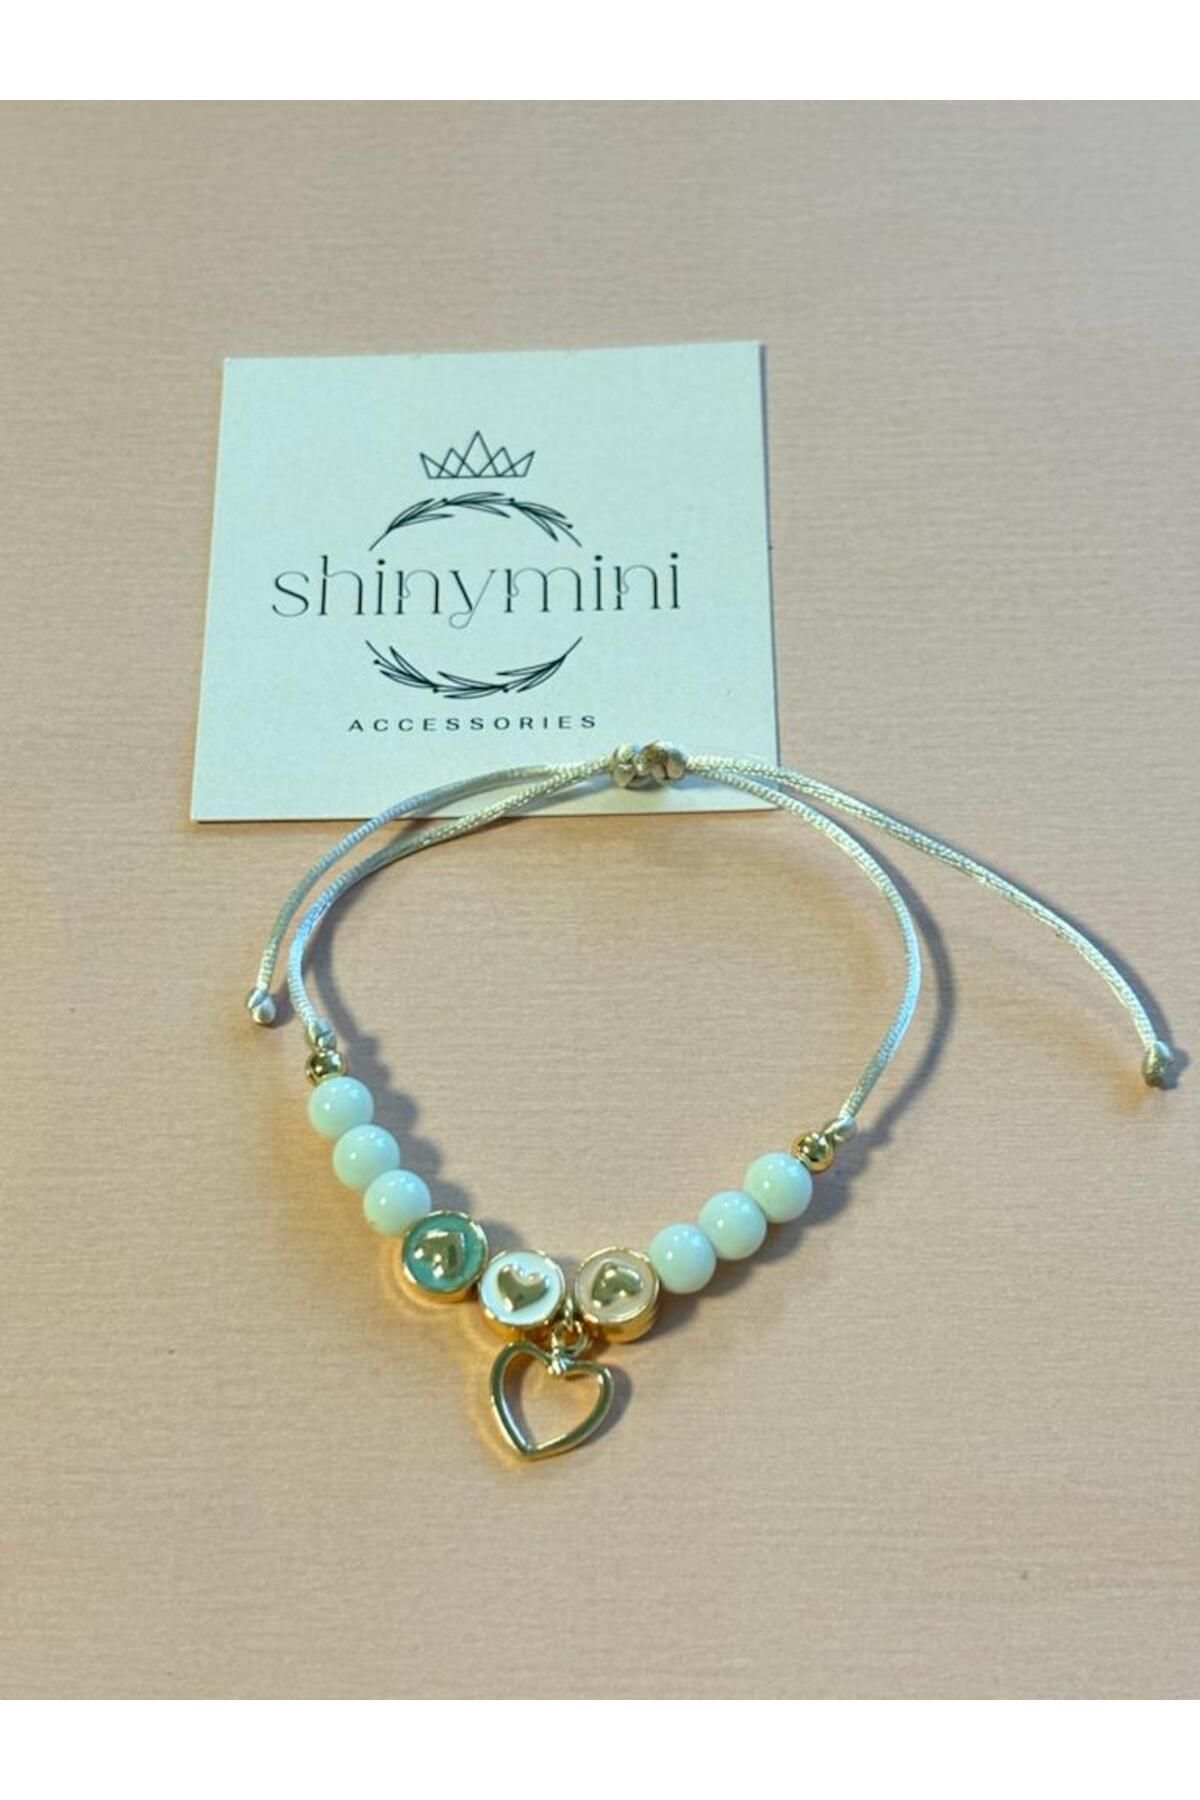 shinymini accessories Özel Tasarım Kız Çocuk Boncuklu ve Kalp Detaylı Ayarlanabilir İpli Bileklik